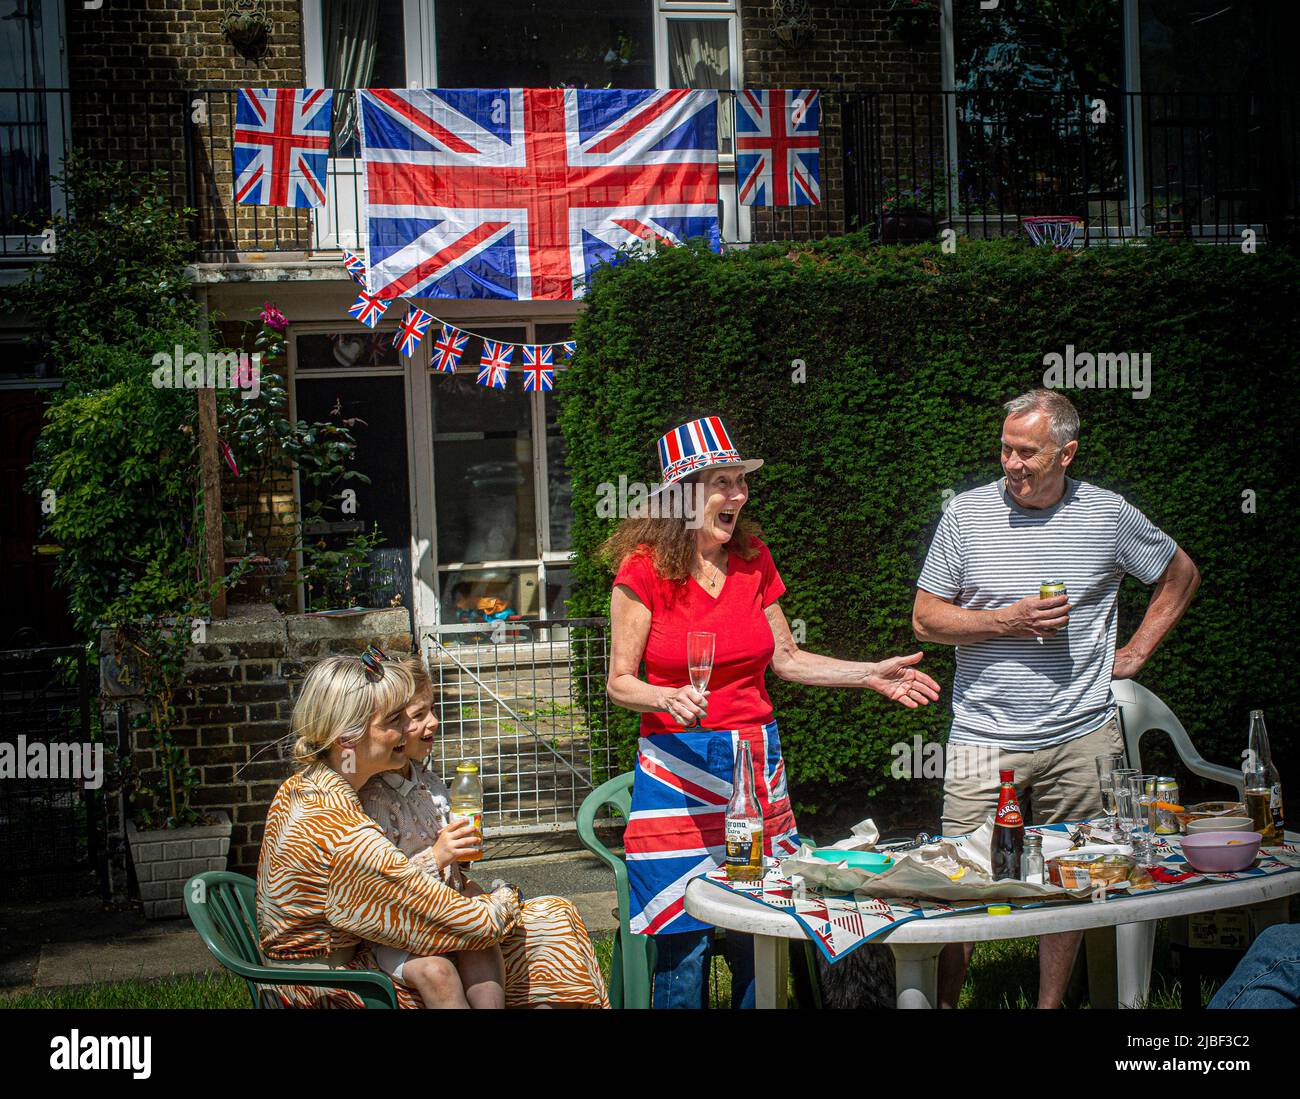 Union Jack-Flaggen und -Streifen stehen vor einem londoner ratshaus, um die 70-jährige Regierungszeit Ihrer Majestät der Königin zu feiern. Stockfoto